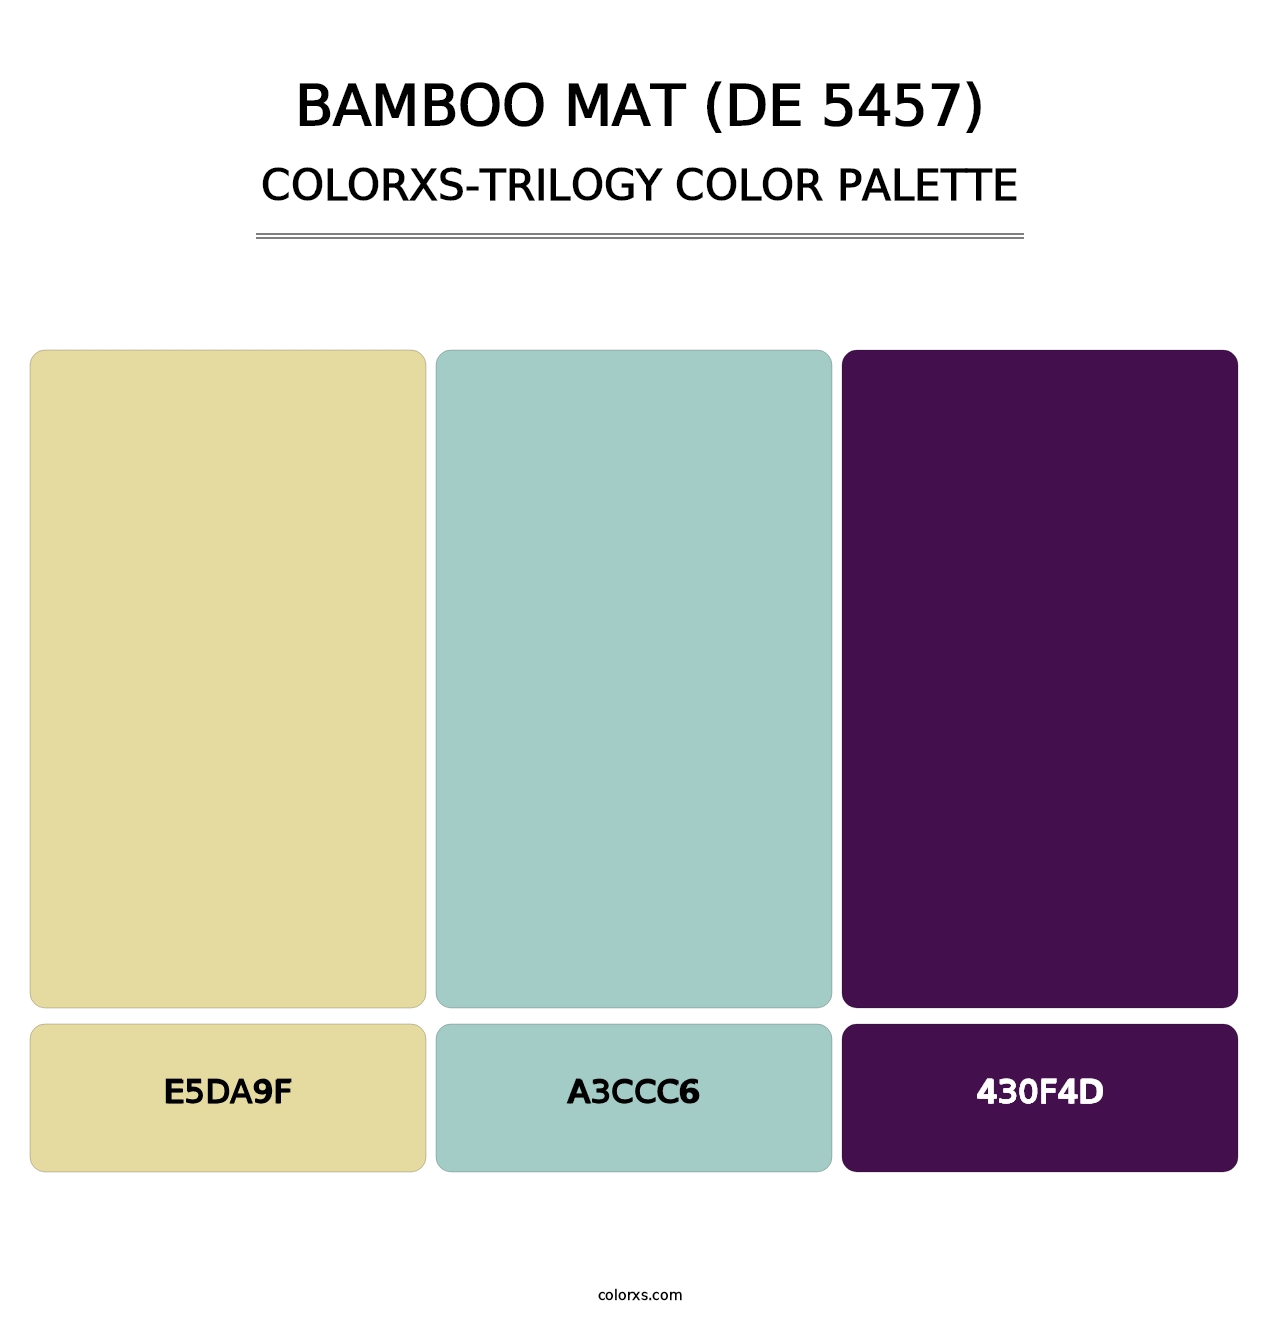 Bamboo Mat (DE 5457) - Colorxs Trilogy Palette